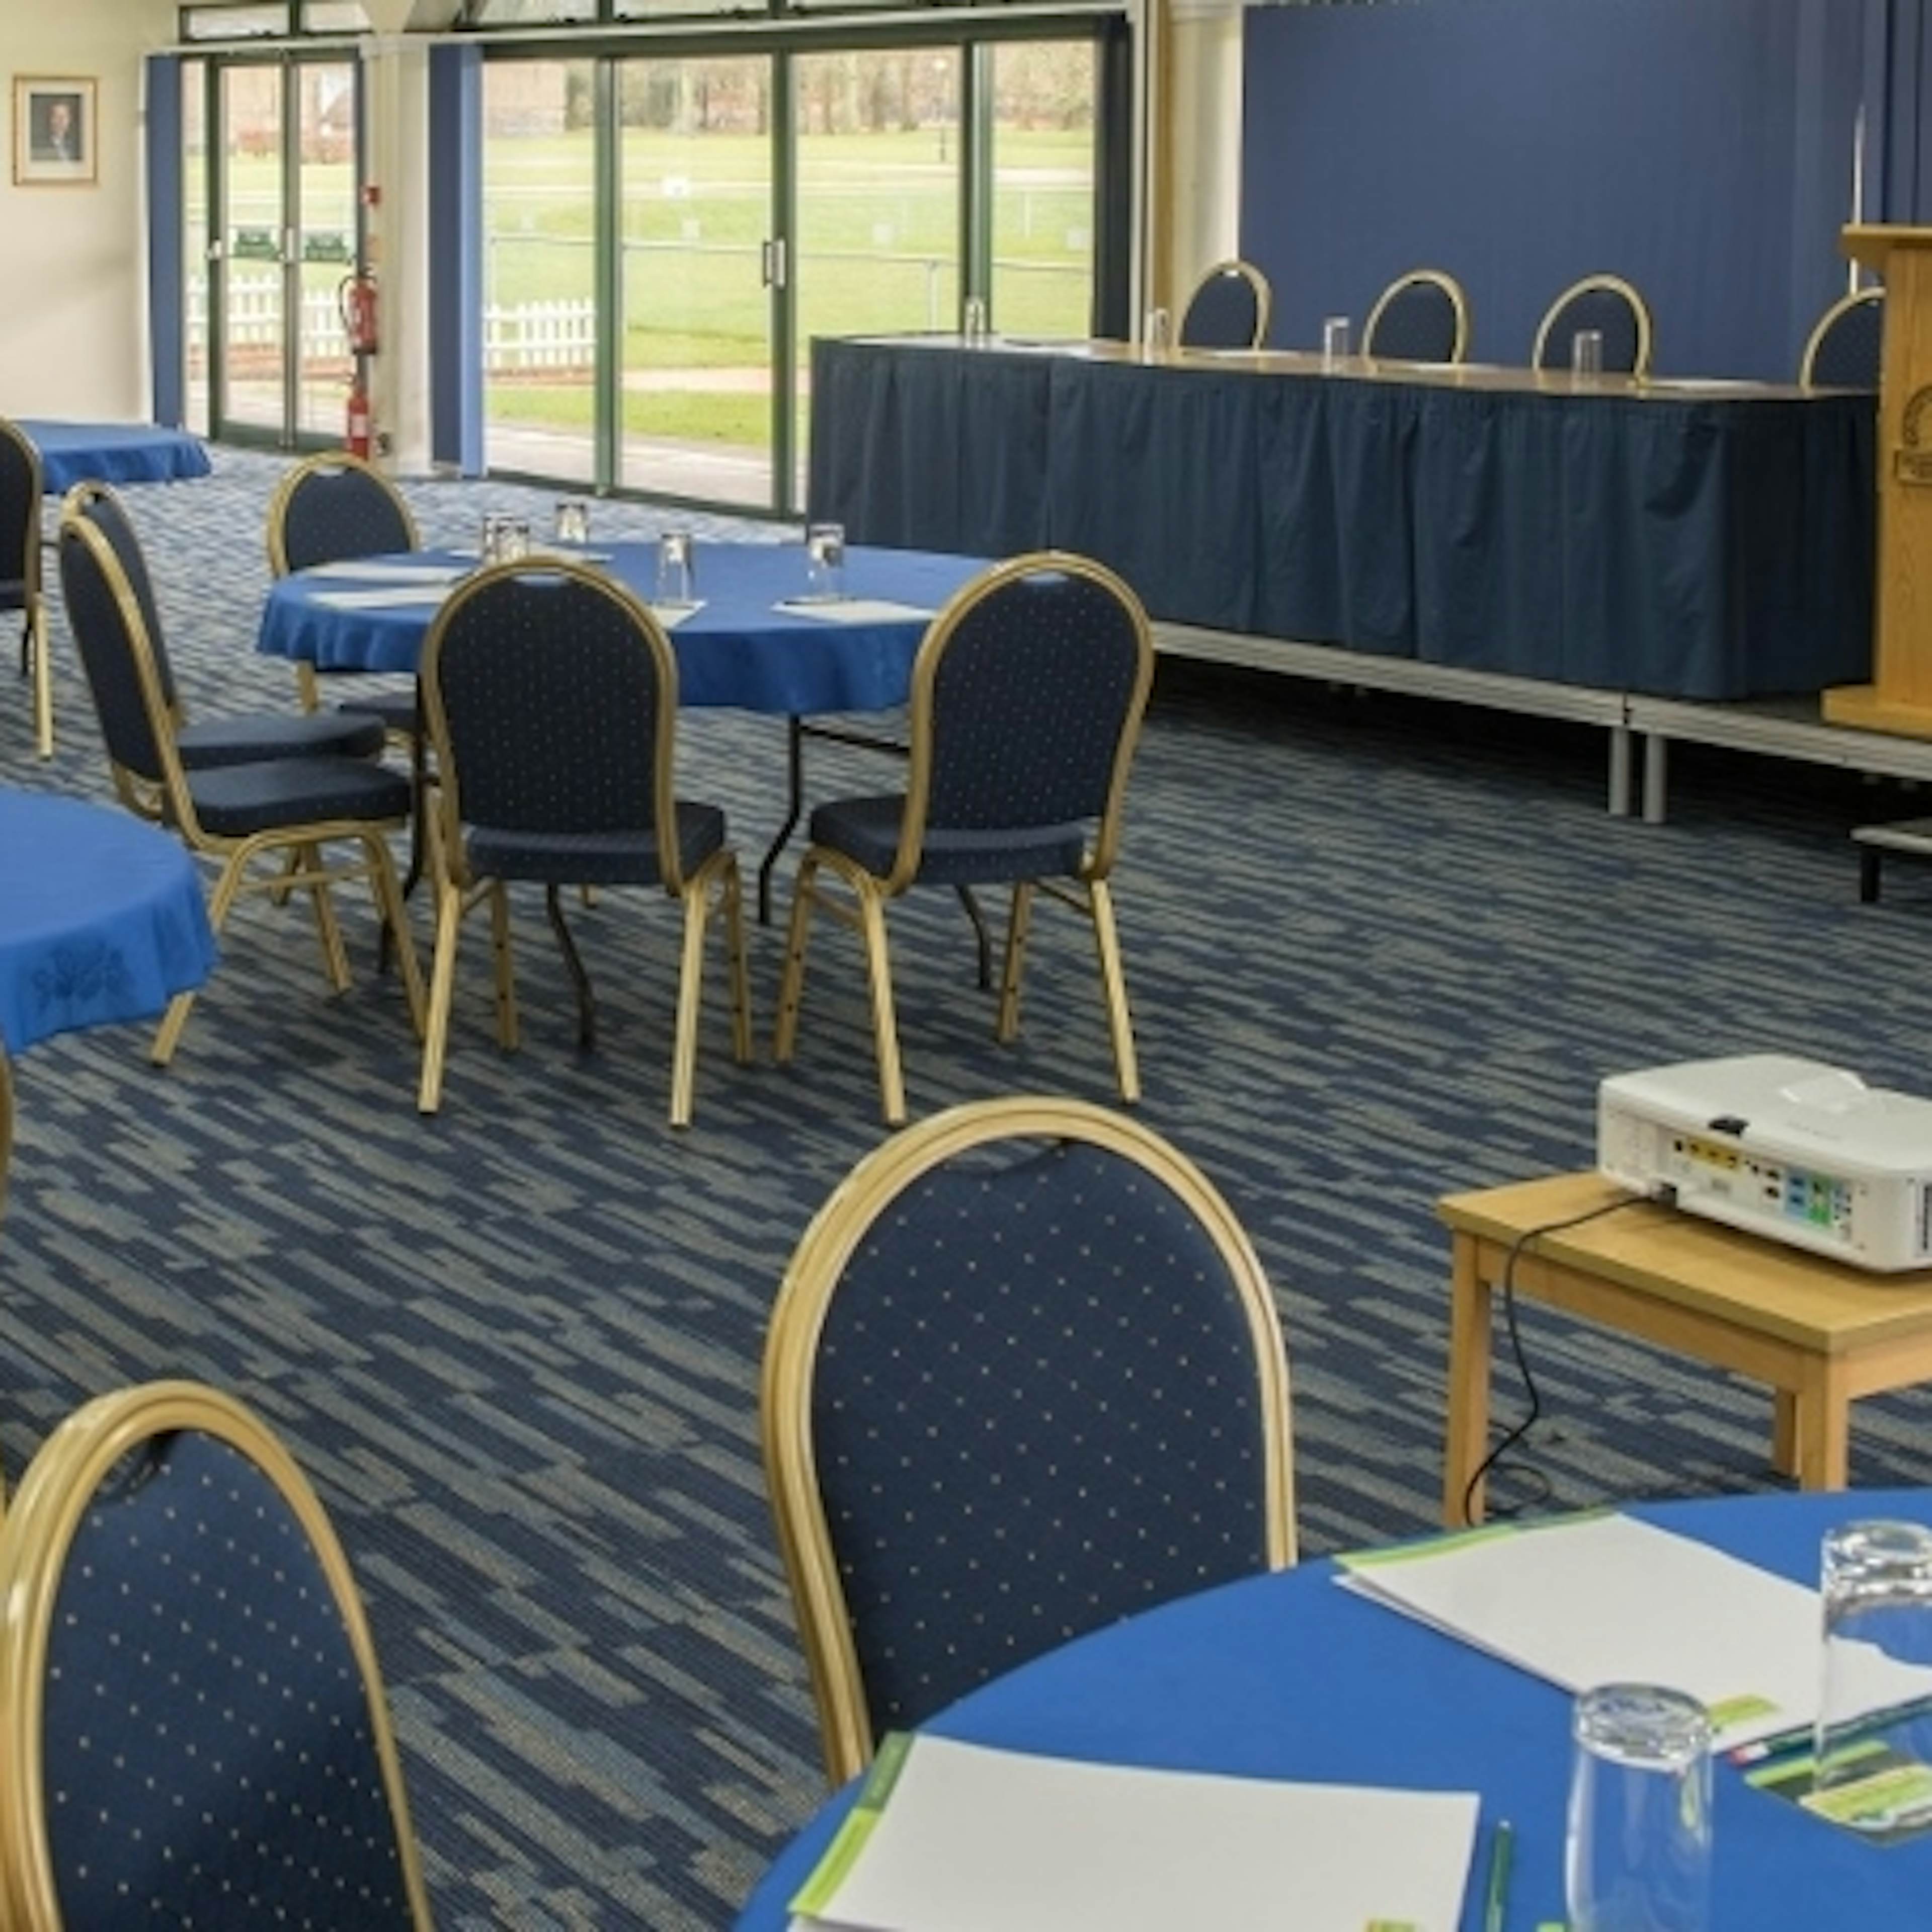 South of England Event Centre - Ardingly Room image 2